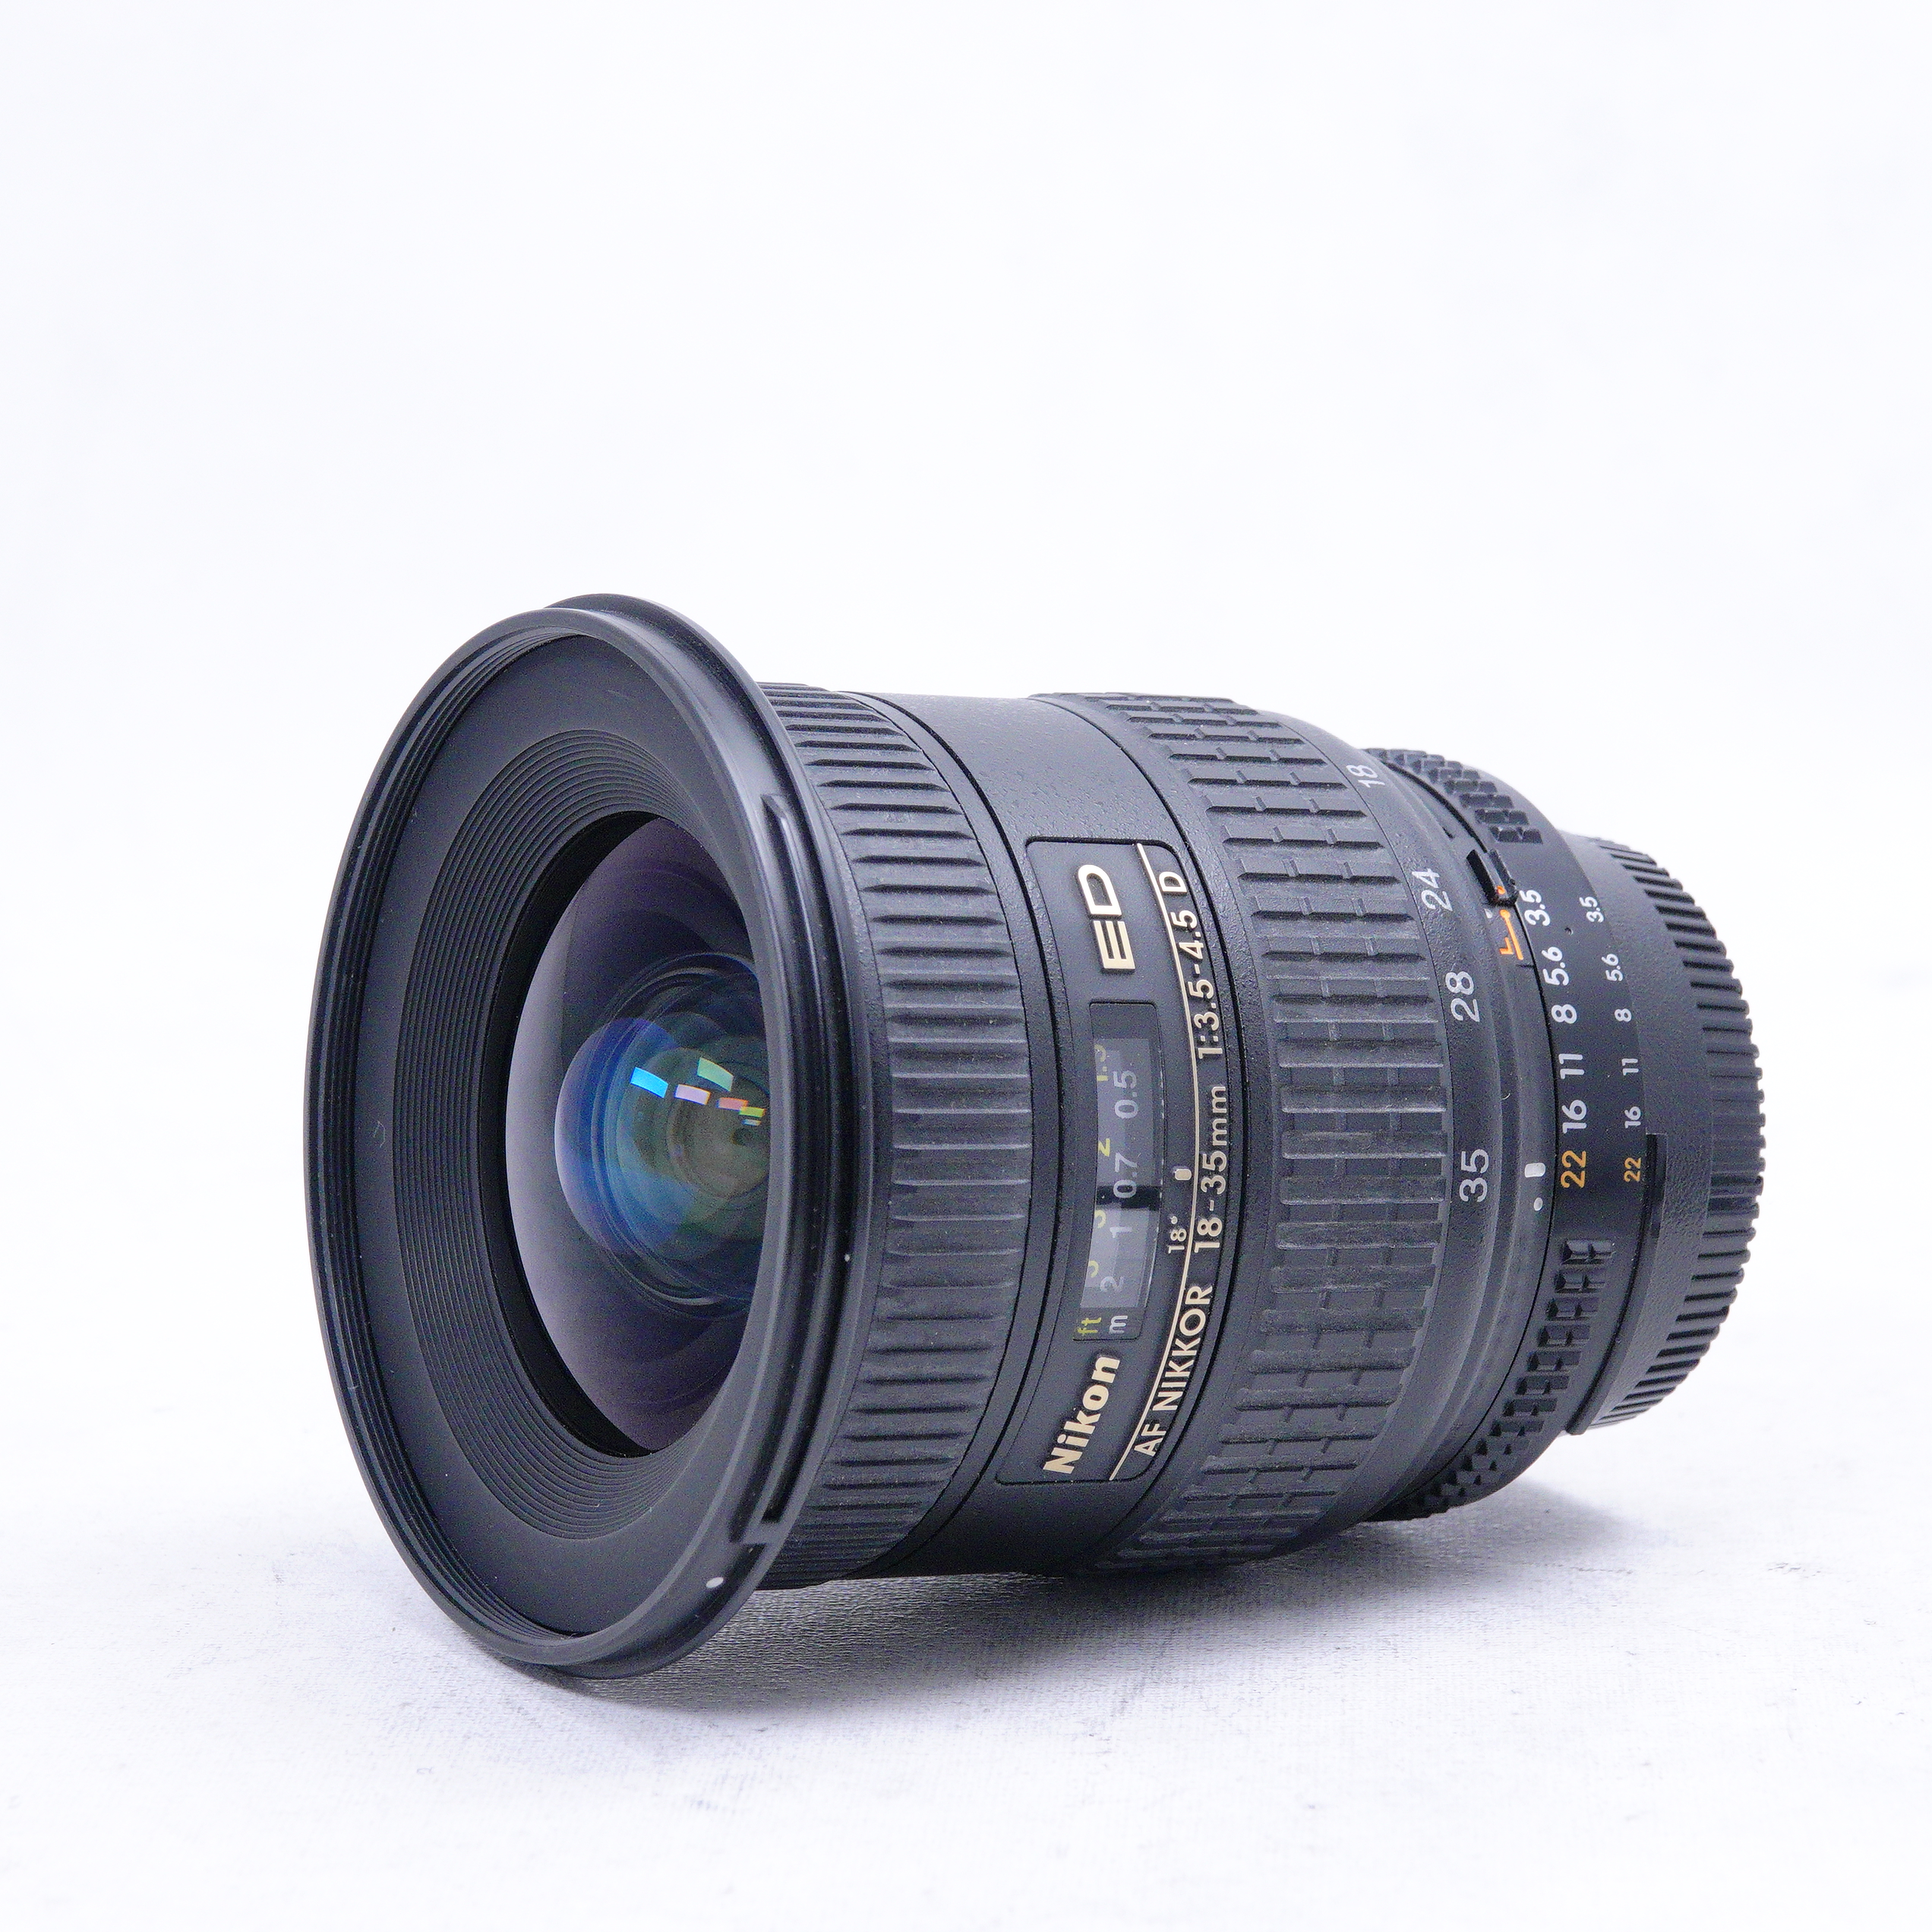 Lente Nikon AF NIKKOR 18-35mm f3.5-4.5 G ED - Usado